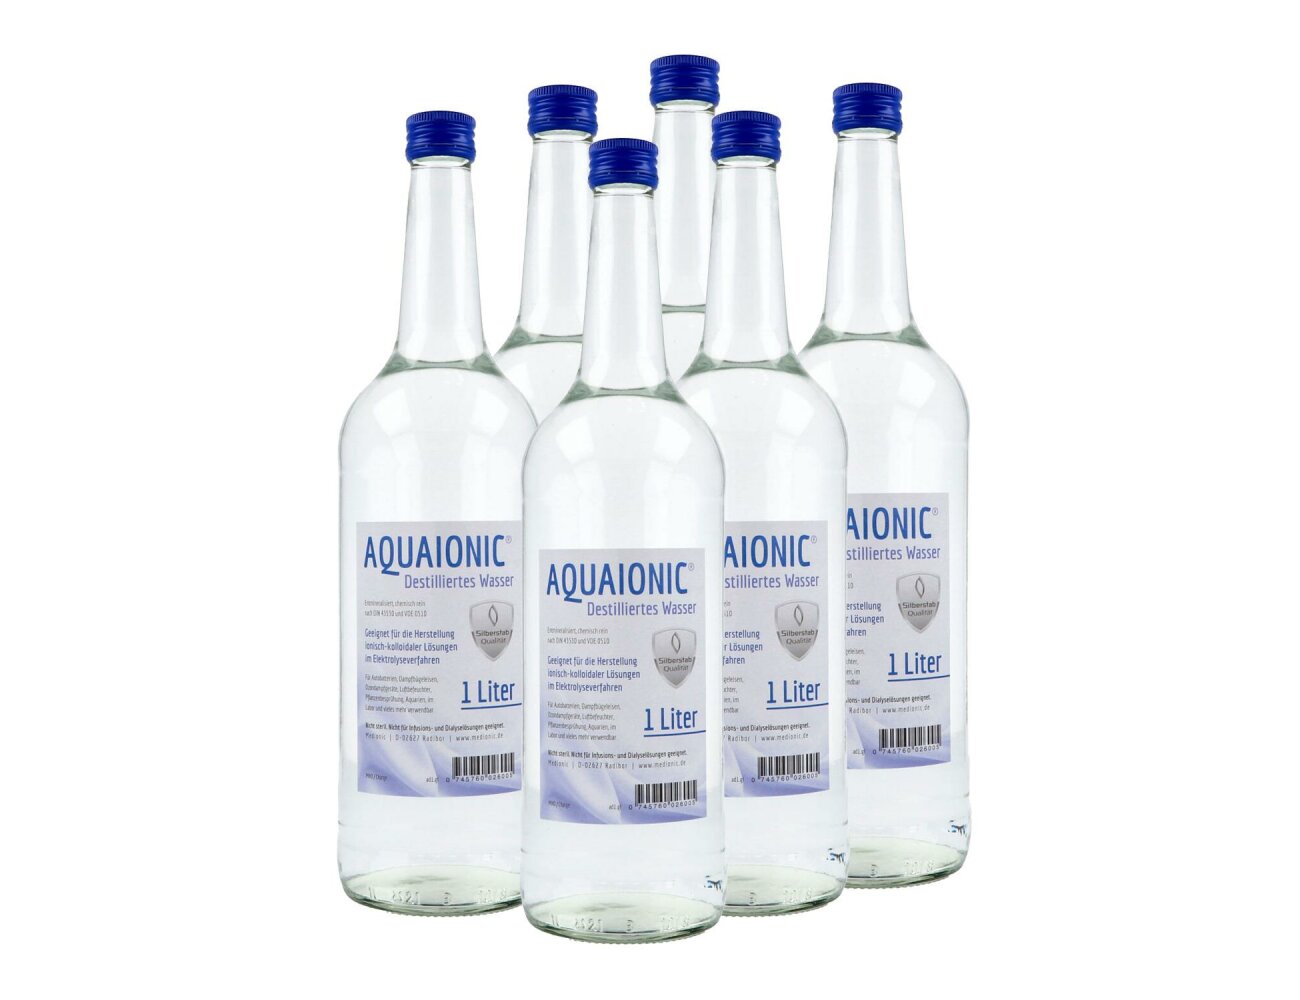 aquaionic destilliertes Wasser, in Glasflasche, Sparpaket...